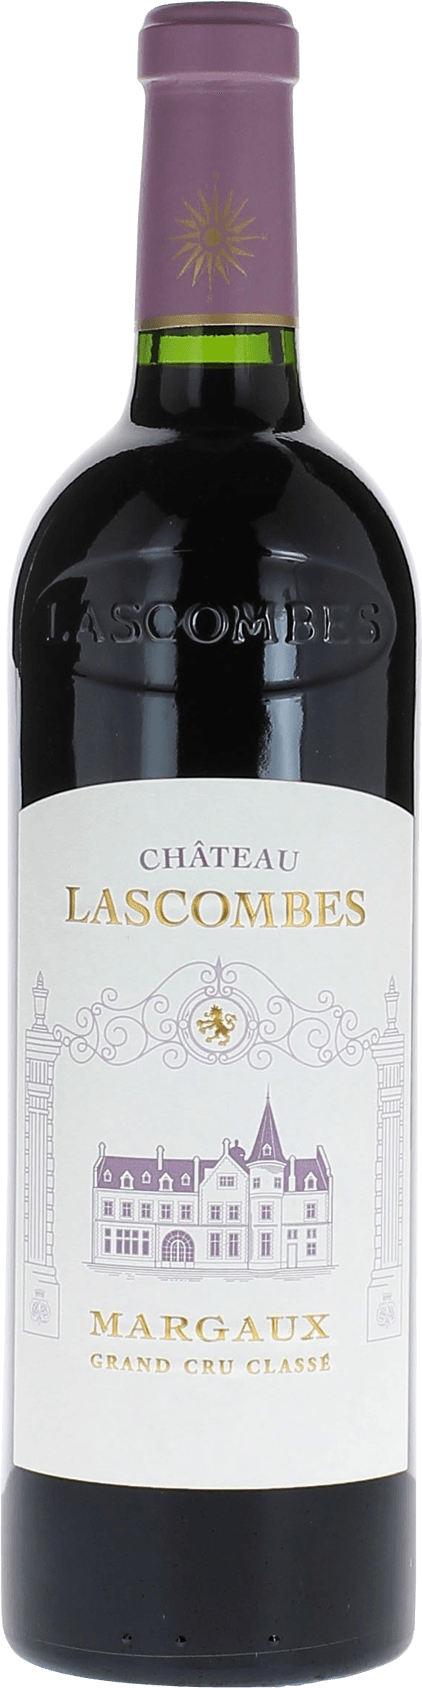 Lascombes 1998 2me Grand cru class Margaux, Bordeaux rouge